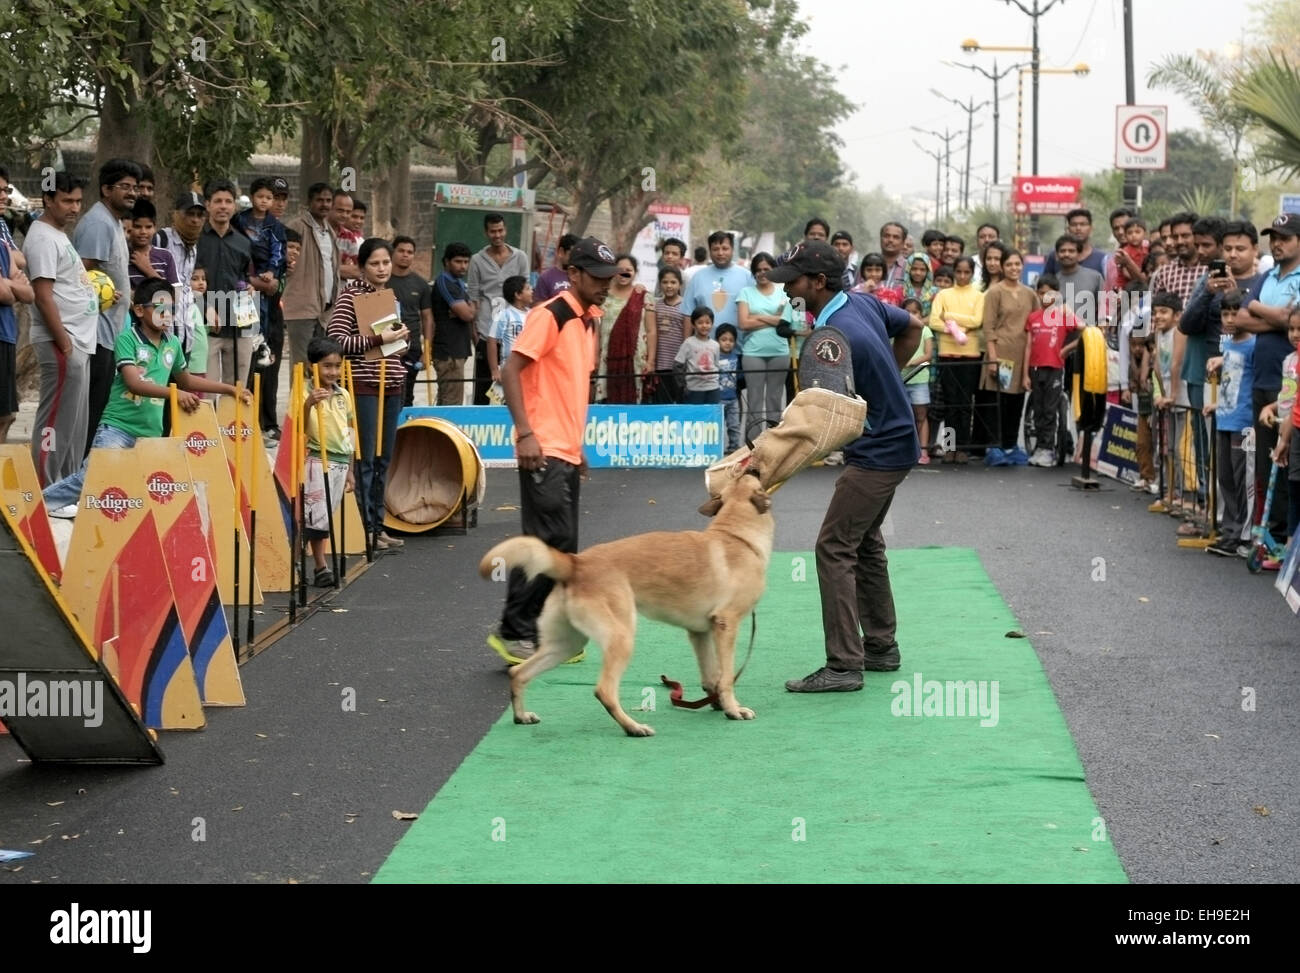 Dresseur de chiens indiens montrent le style d'attaque du chien pendant le cinq février Programme de routes28,2015 à Hyderabad, Inde. Banque D'Images